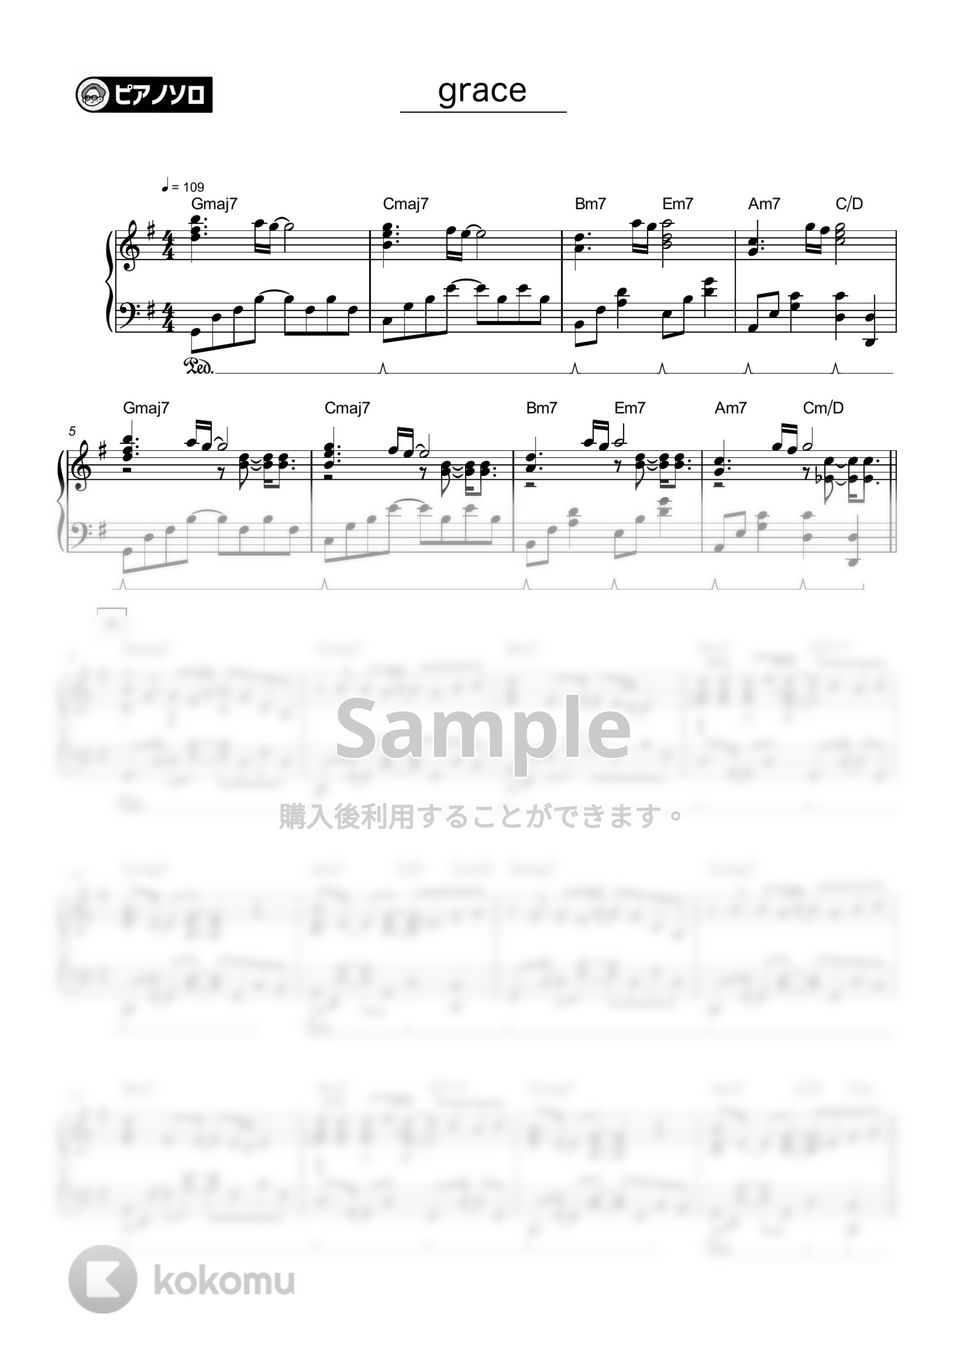 藤井風 - grace by シータピアノ